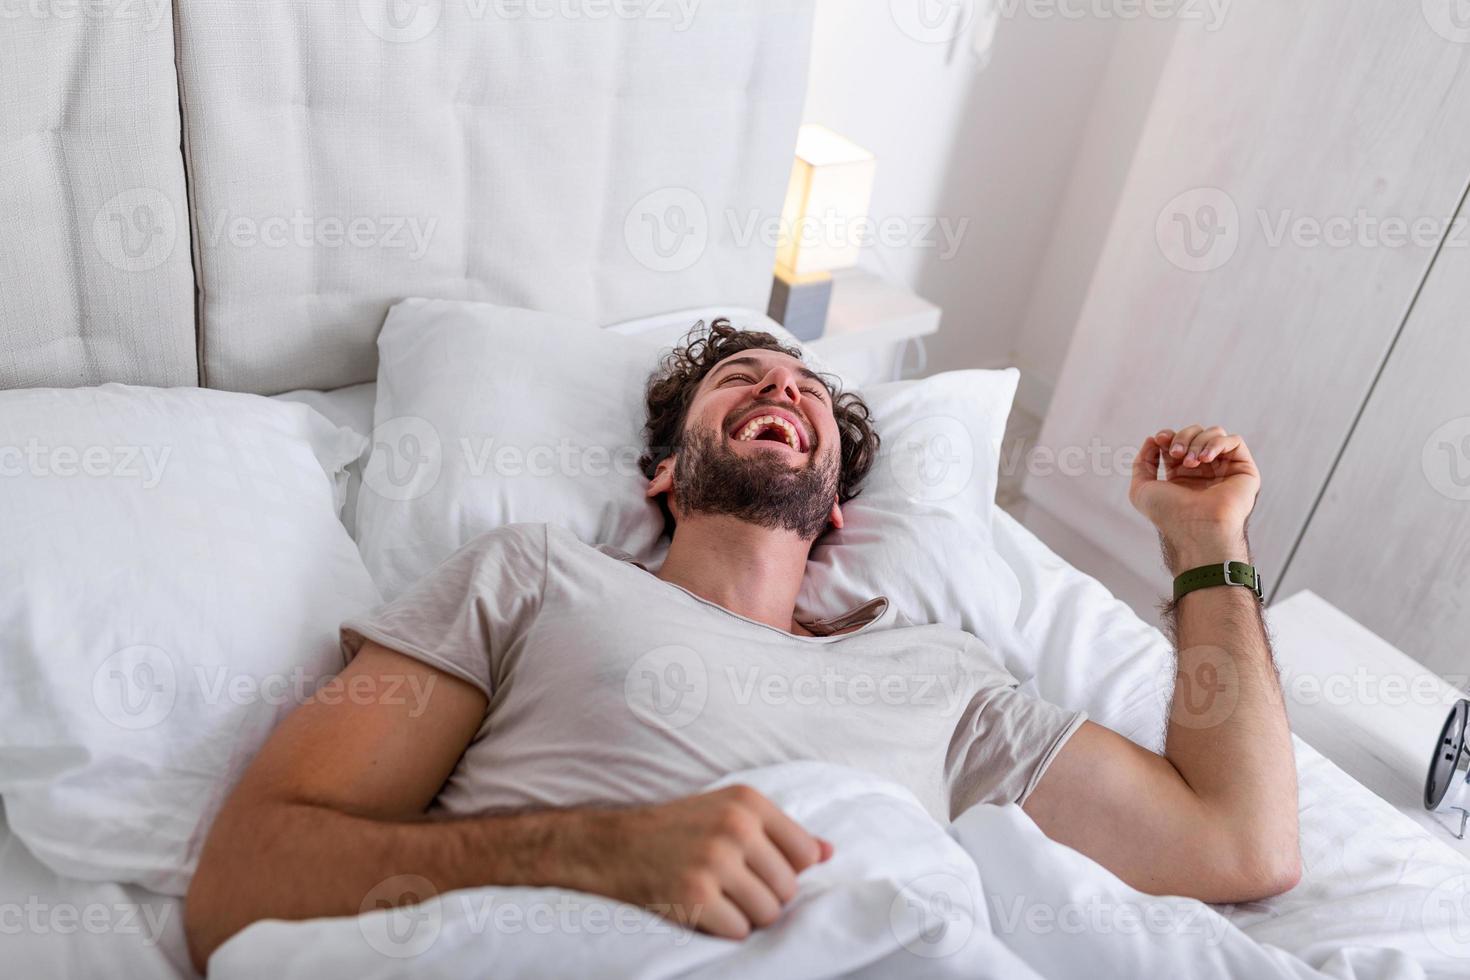 junger Mann schläft, wacht auf und streckt sich in seinem Bett. menschen, schlafenszeit und ruhekonzept - mann liegt zu hause im bett, es ist zeit aufzuwachen foto